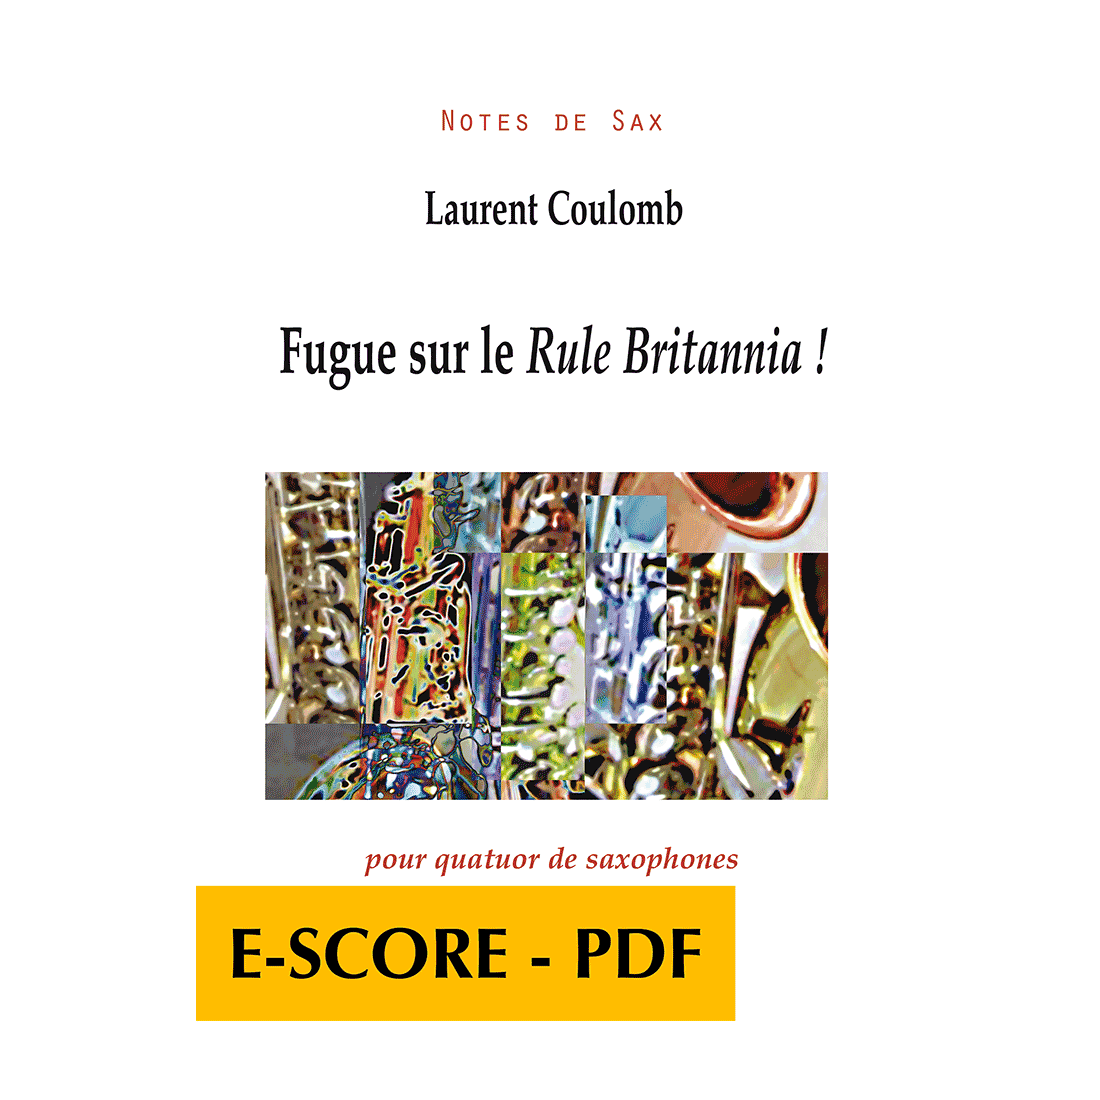 Fugue sur le Rule Britannia ! for saxophone quartet - E-score PDF